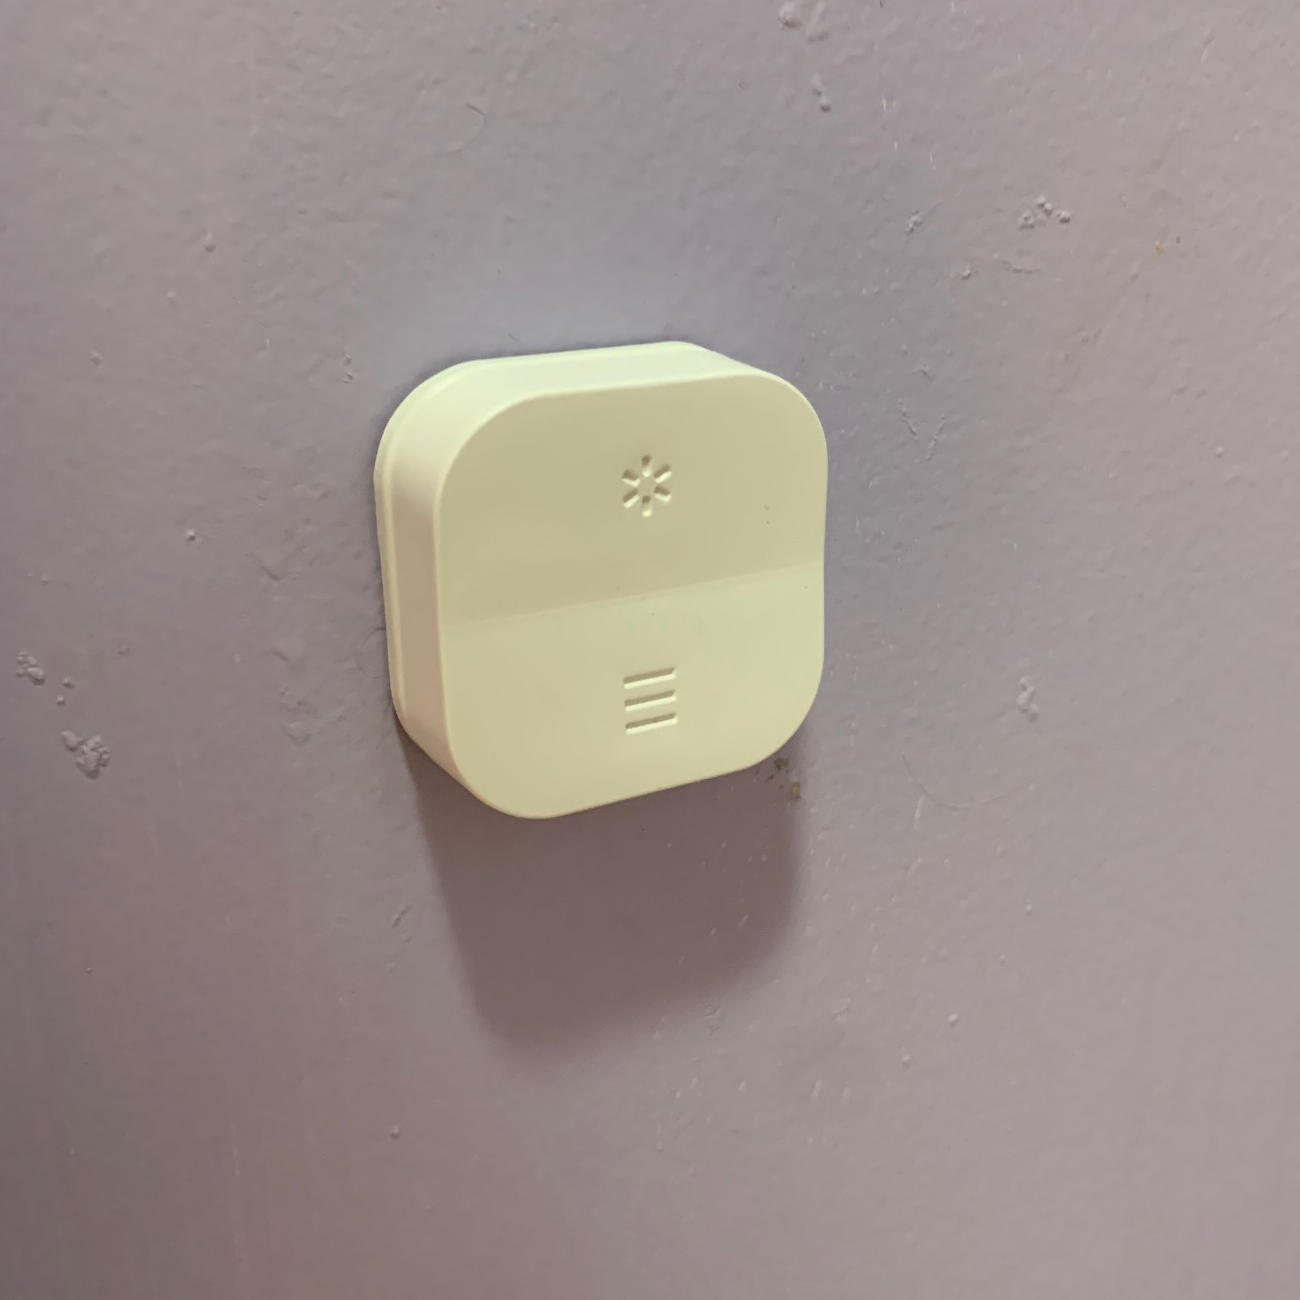 IKEA button next to toilet